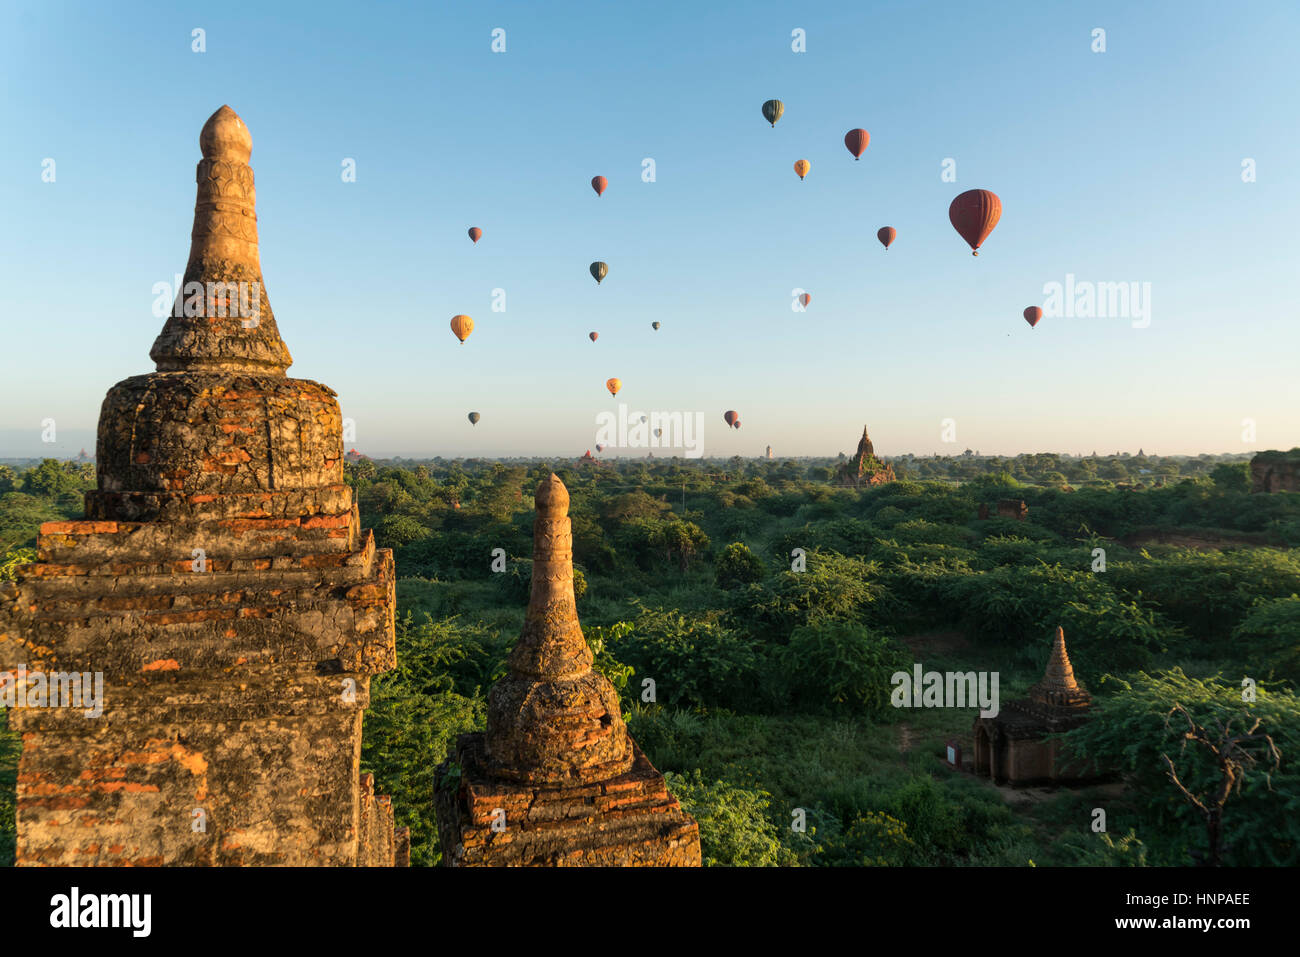 Los globos de aire caliente a través de templos y pagodas de Bagan, Mandalay, Myanmar Foto de stock